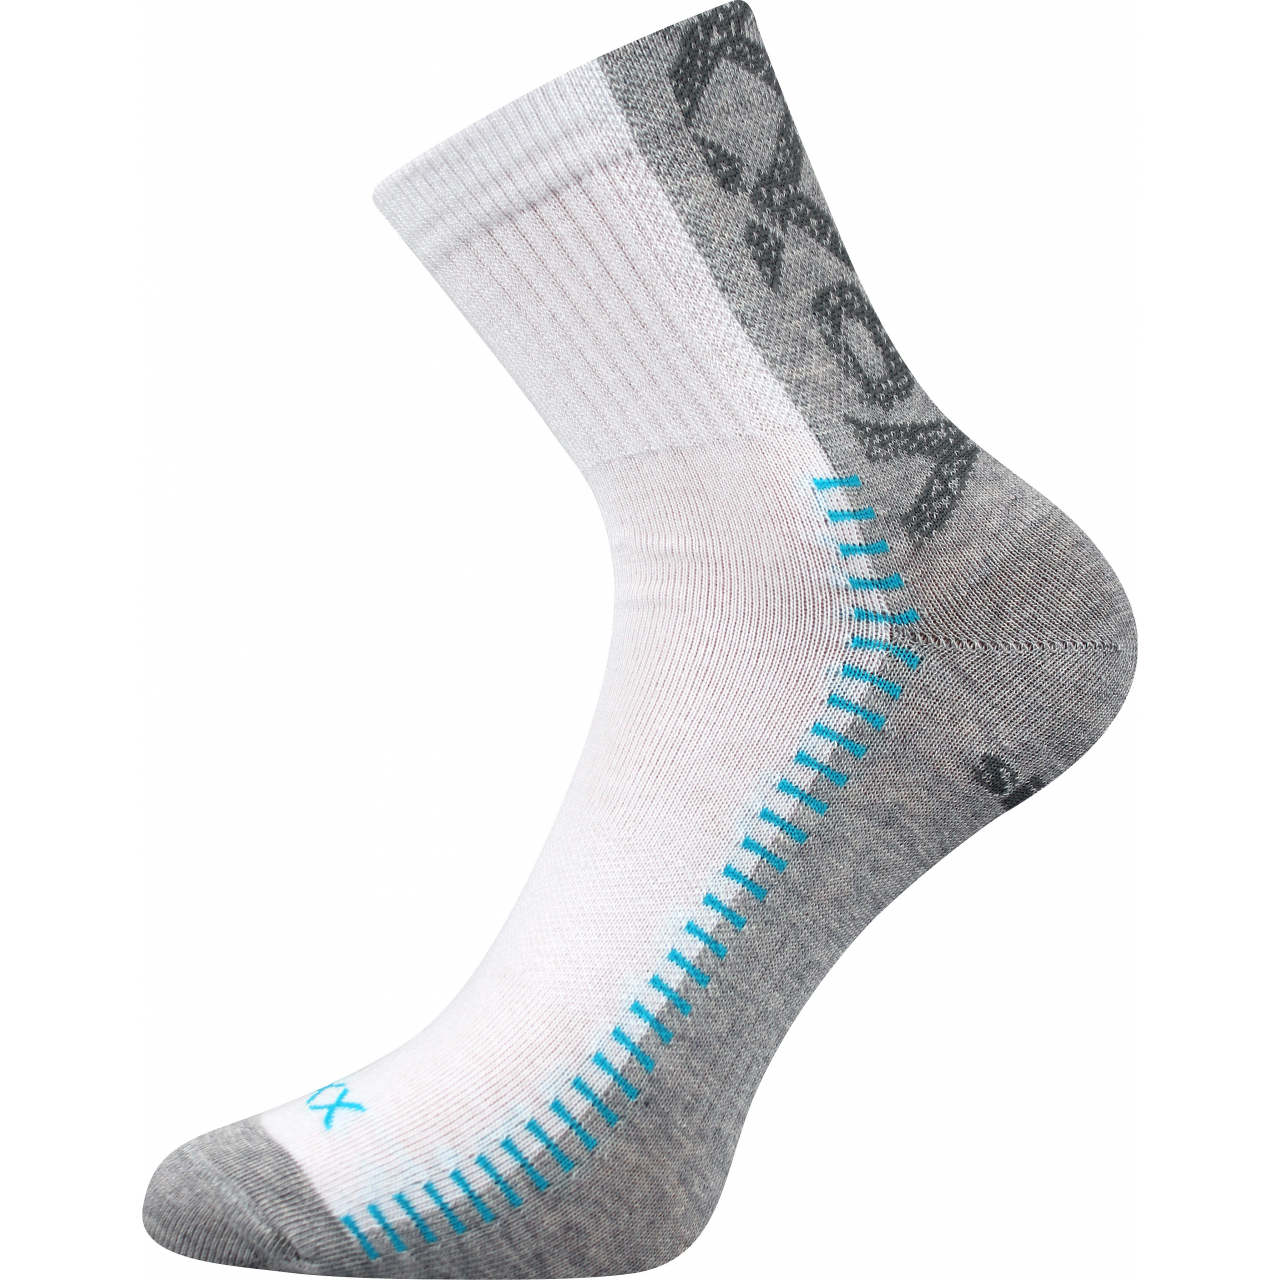 Ponožky sportovní Voxx Revolt - bílé-šedé, 43-46